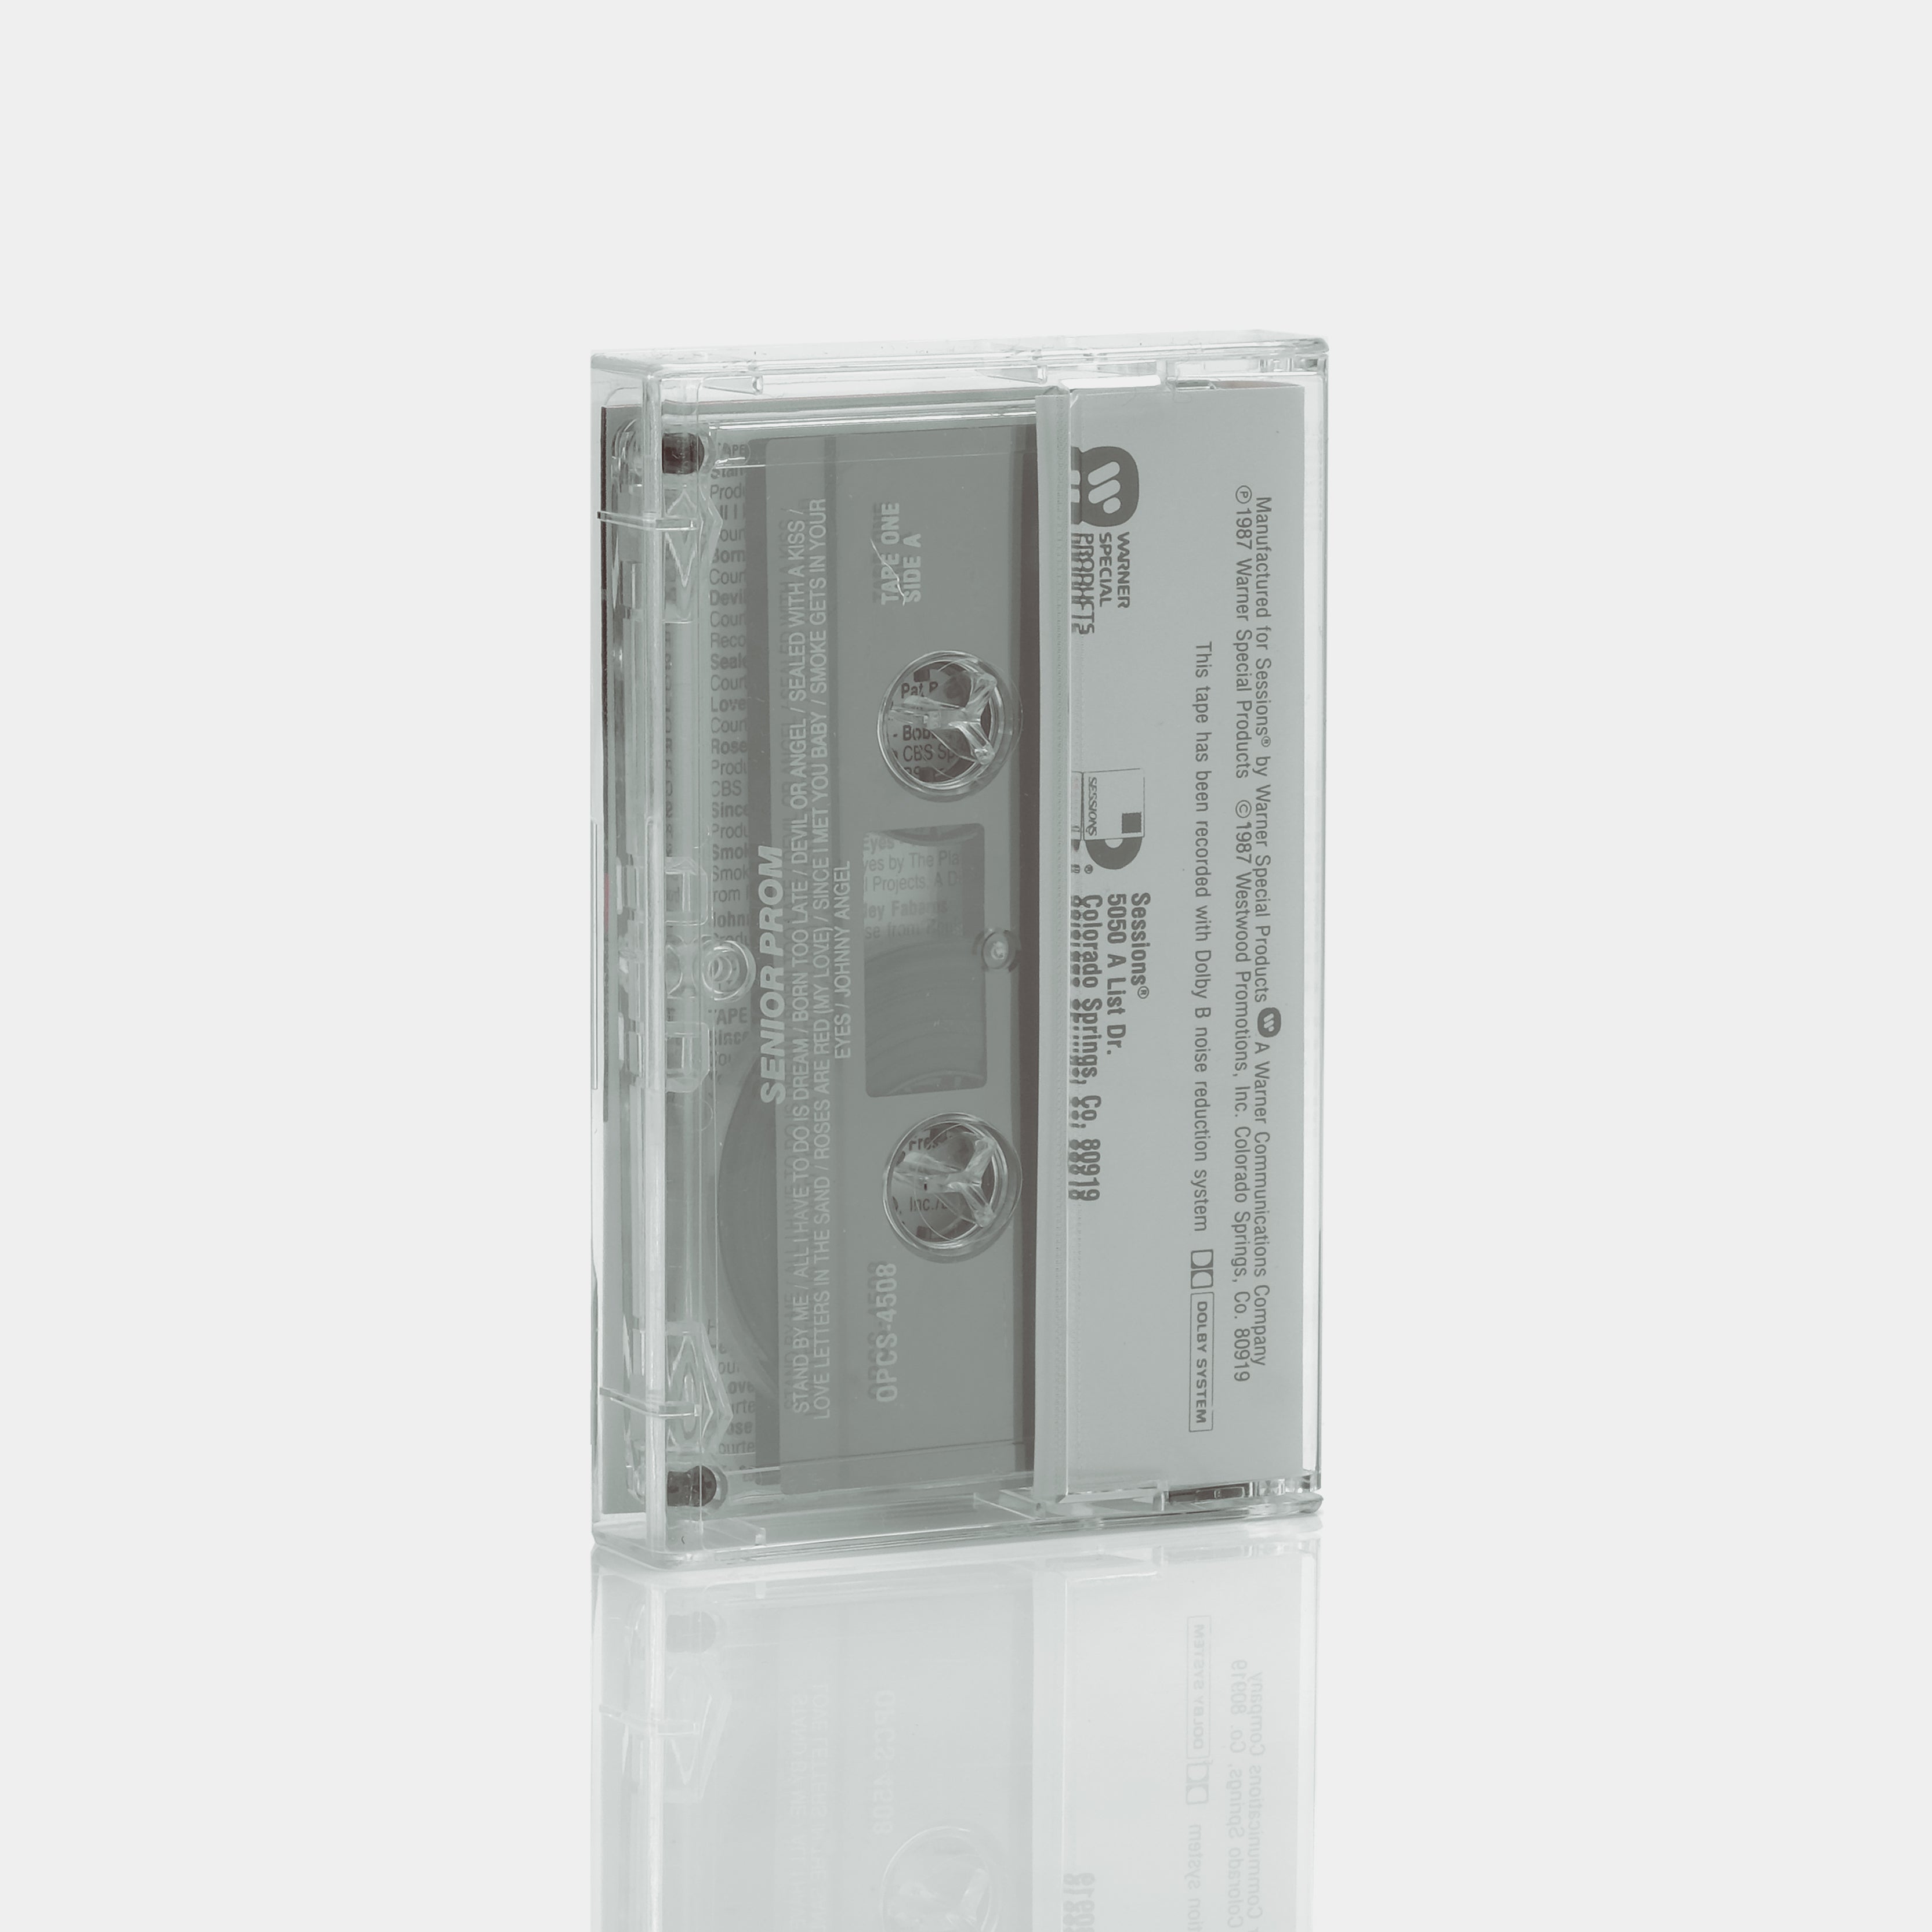 Senior Prom - Tape 1 Cassette Tape